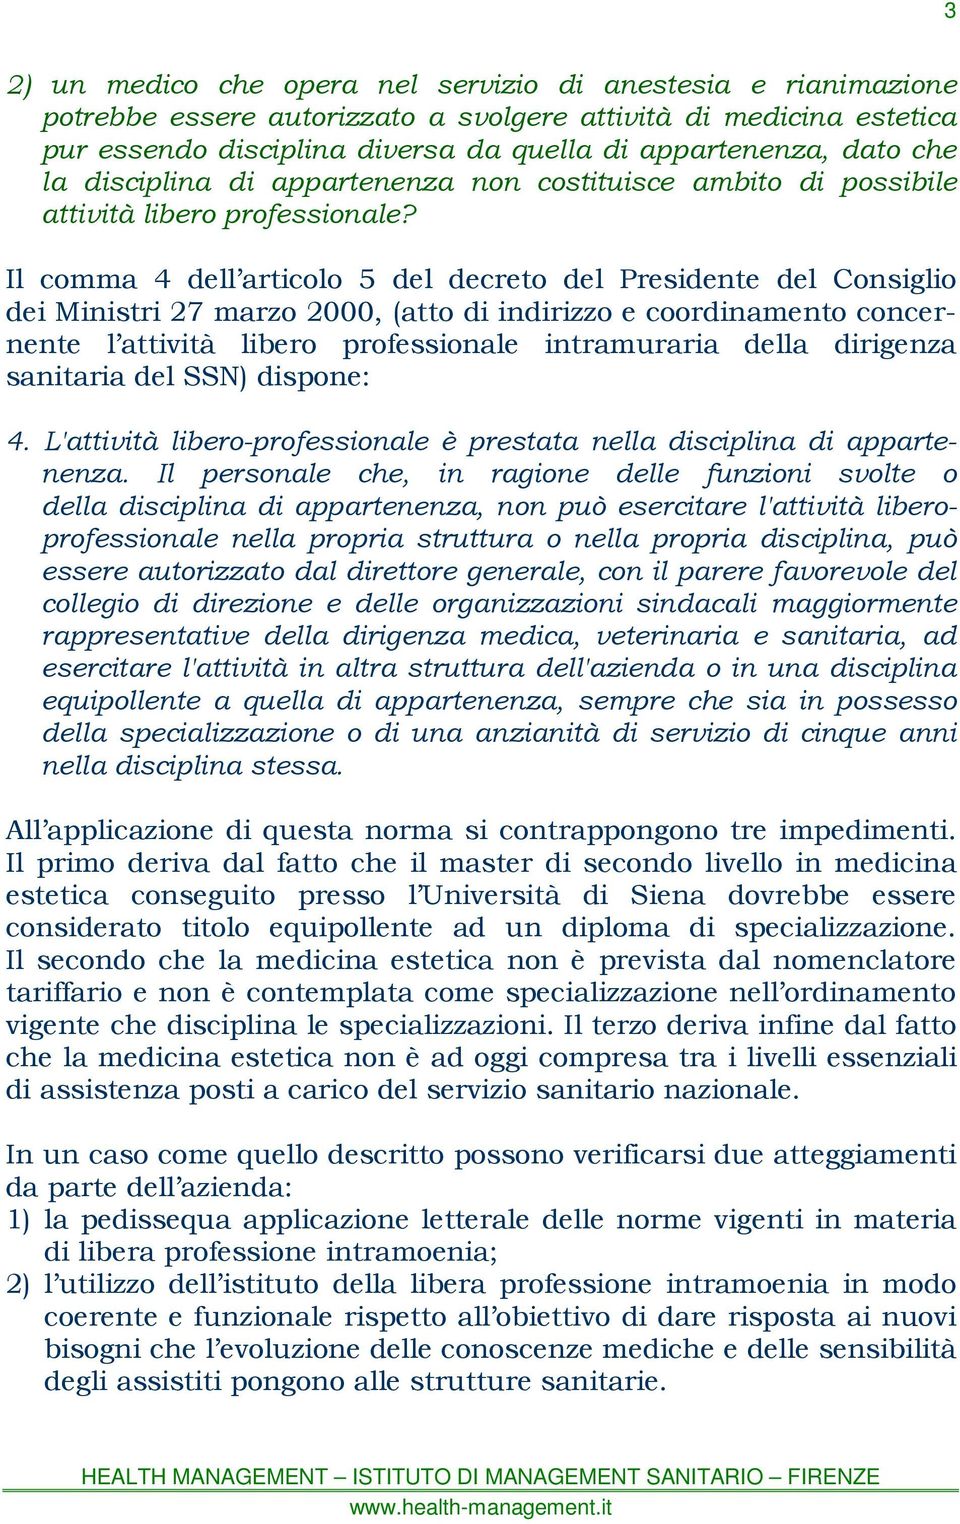 Il comma 4 dell articolo 5 del decreto del Presidente del Consiglio dei Ministri 27 marzo 2000, (atto di indirizzo e coordinamento concernente l attività libero professionale intramuraria della